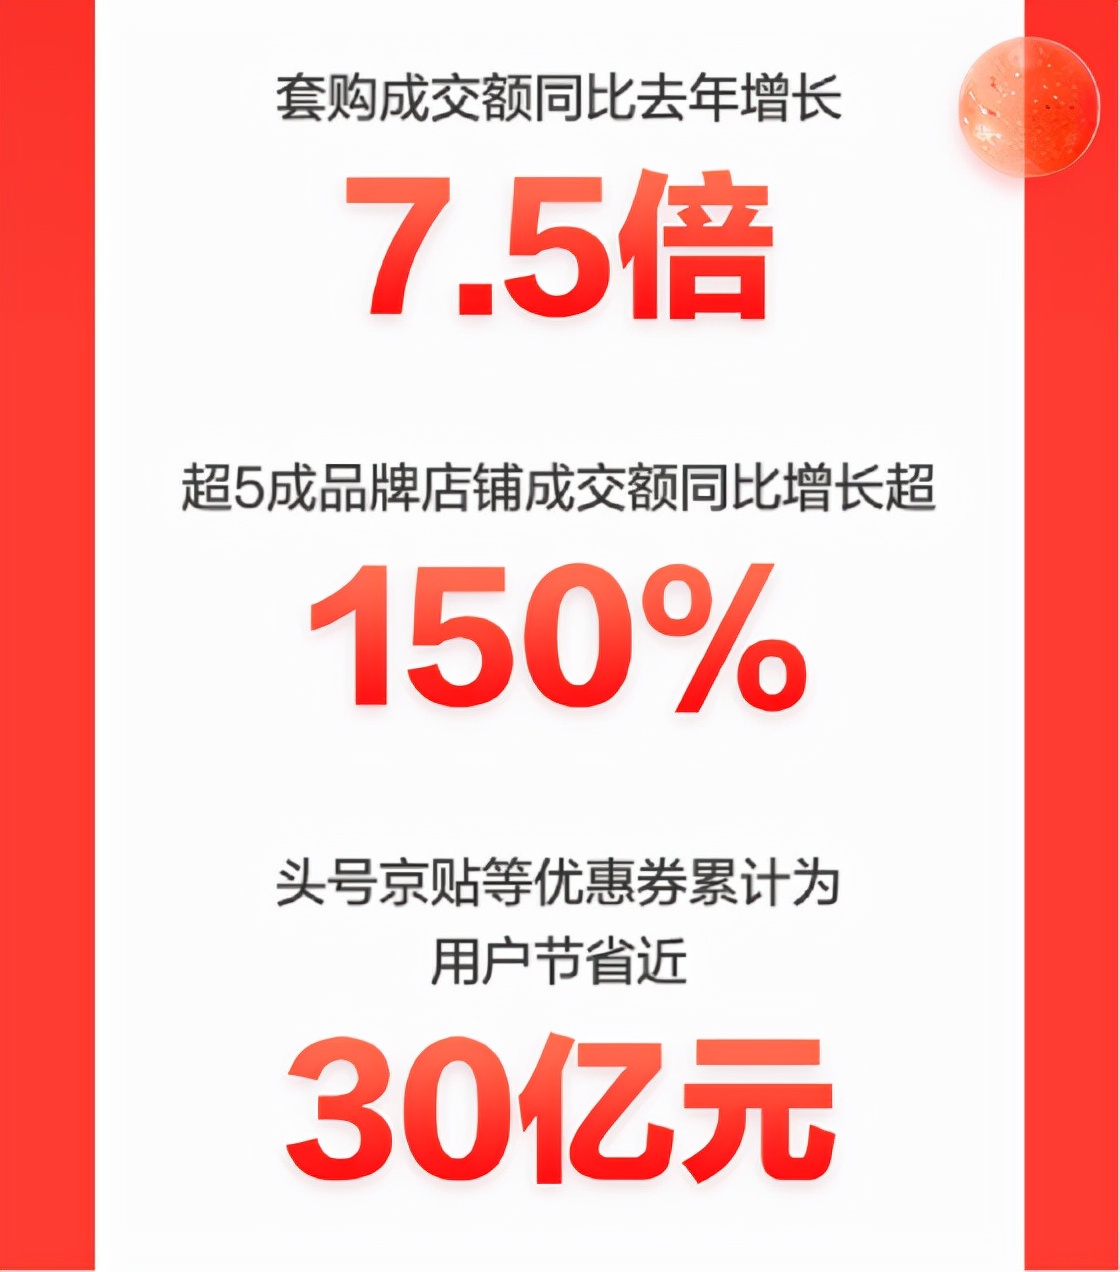 京东家电11.11消费焕新升级 产品平均成交单价同比提升50%